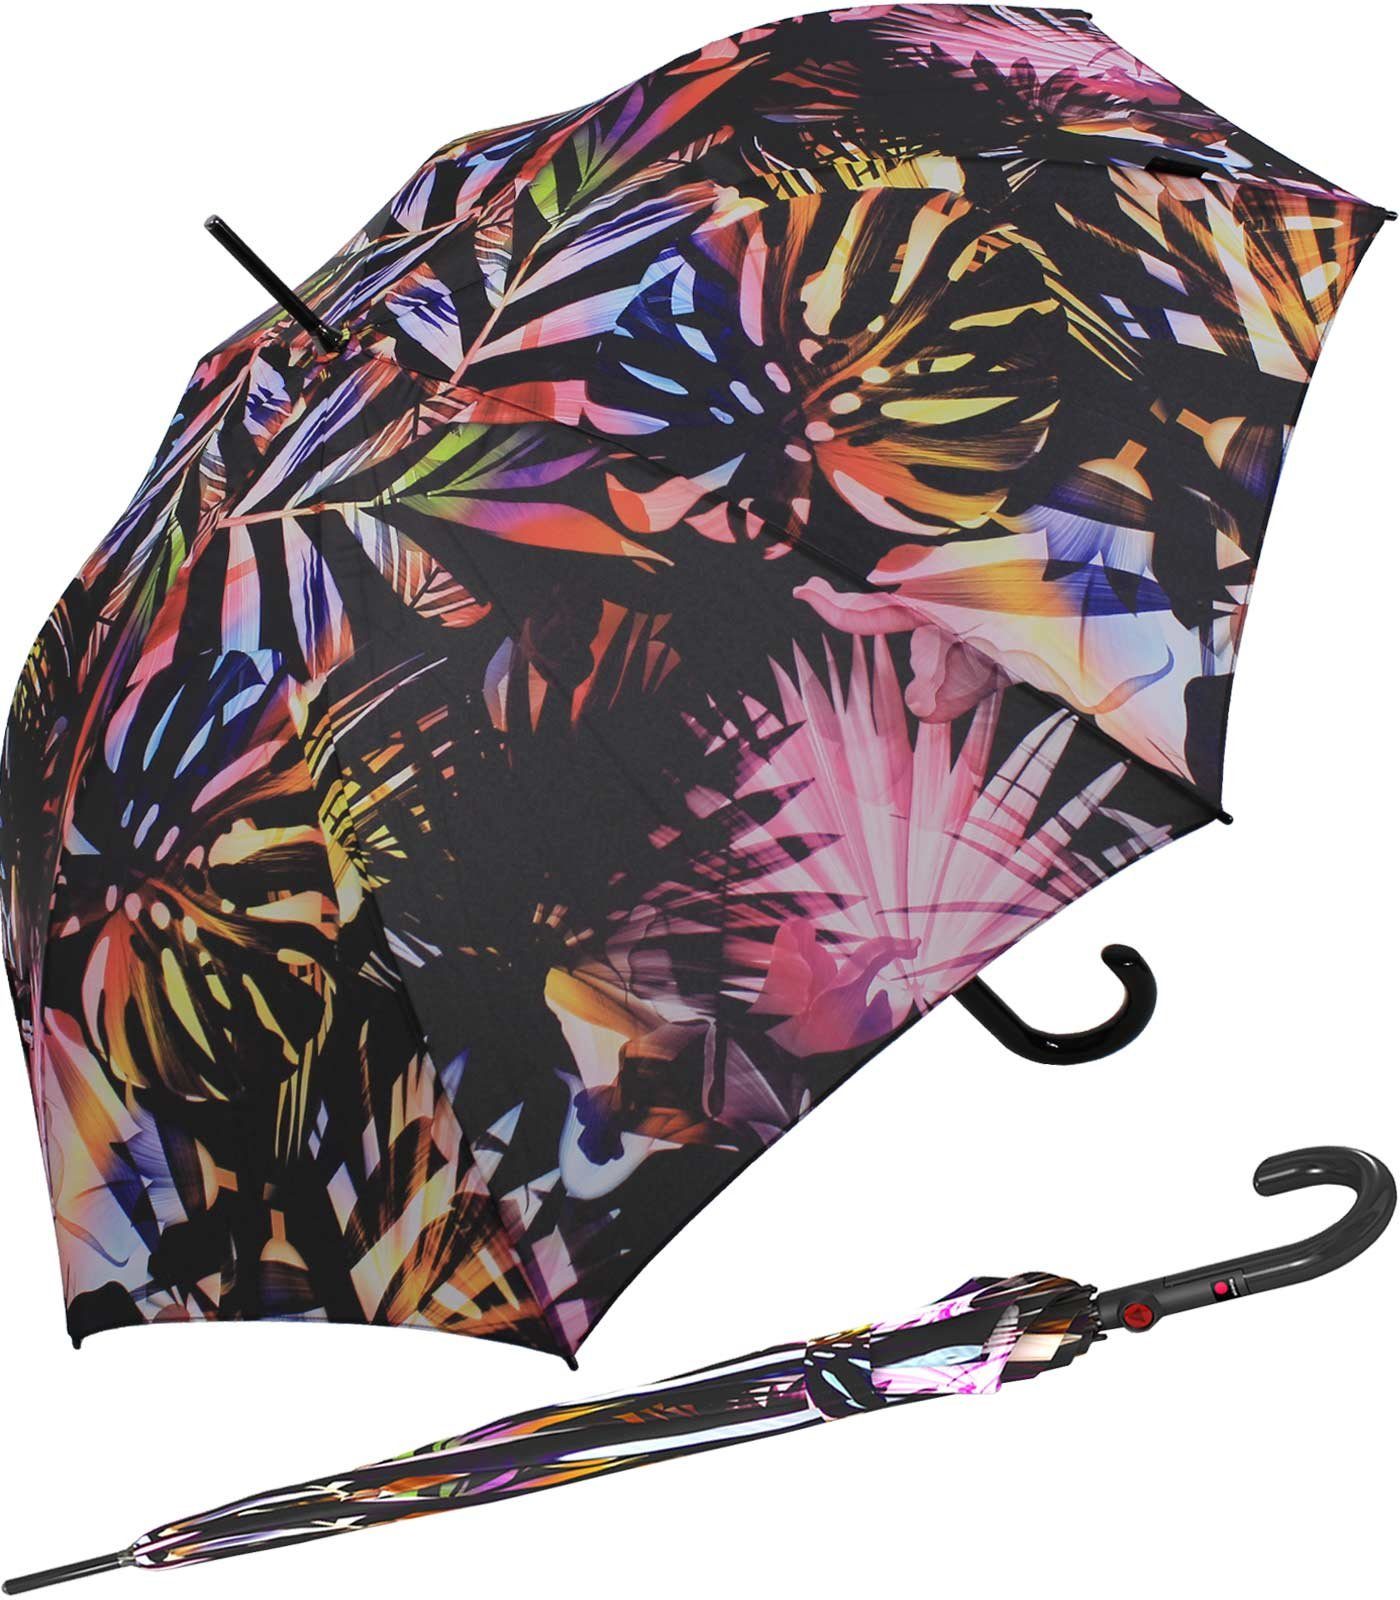 für im Knirps® leicht durch leichter mit großer, Fiberglas und stabil Langregenschirm Schirm Automatik, Dach Damen groß,